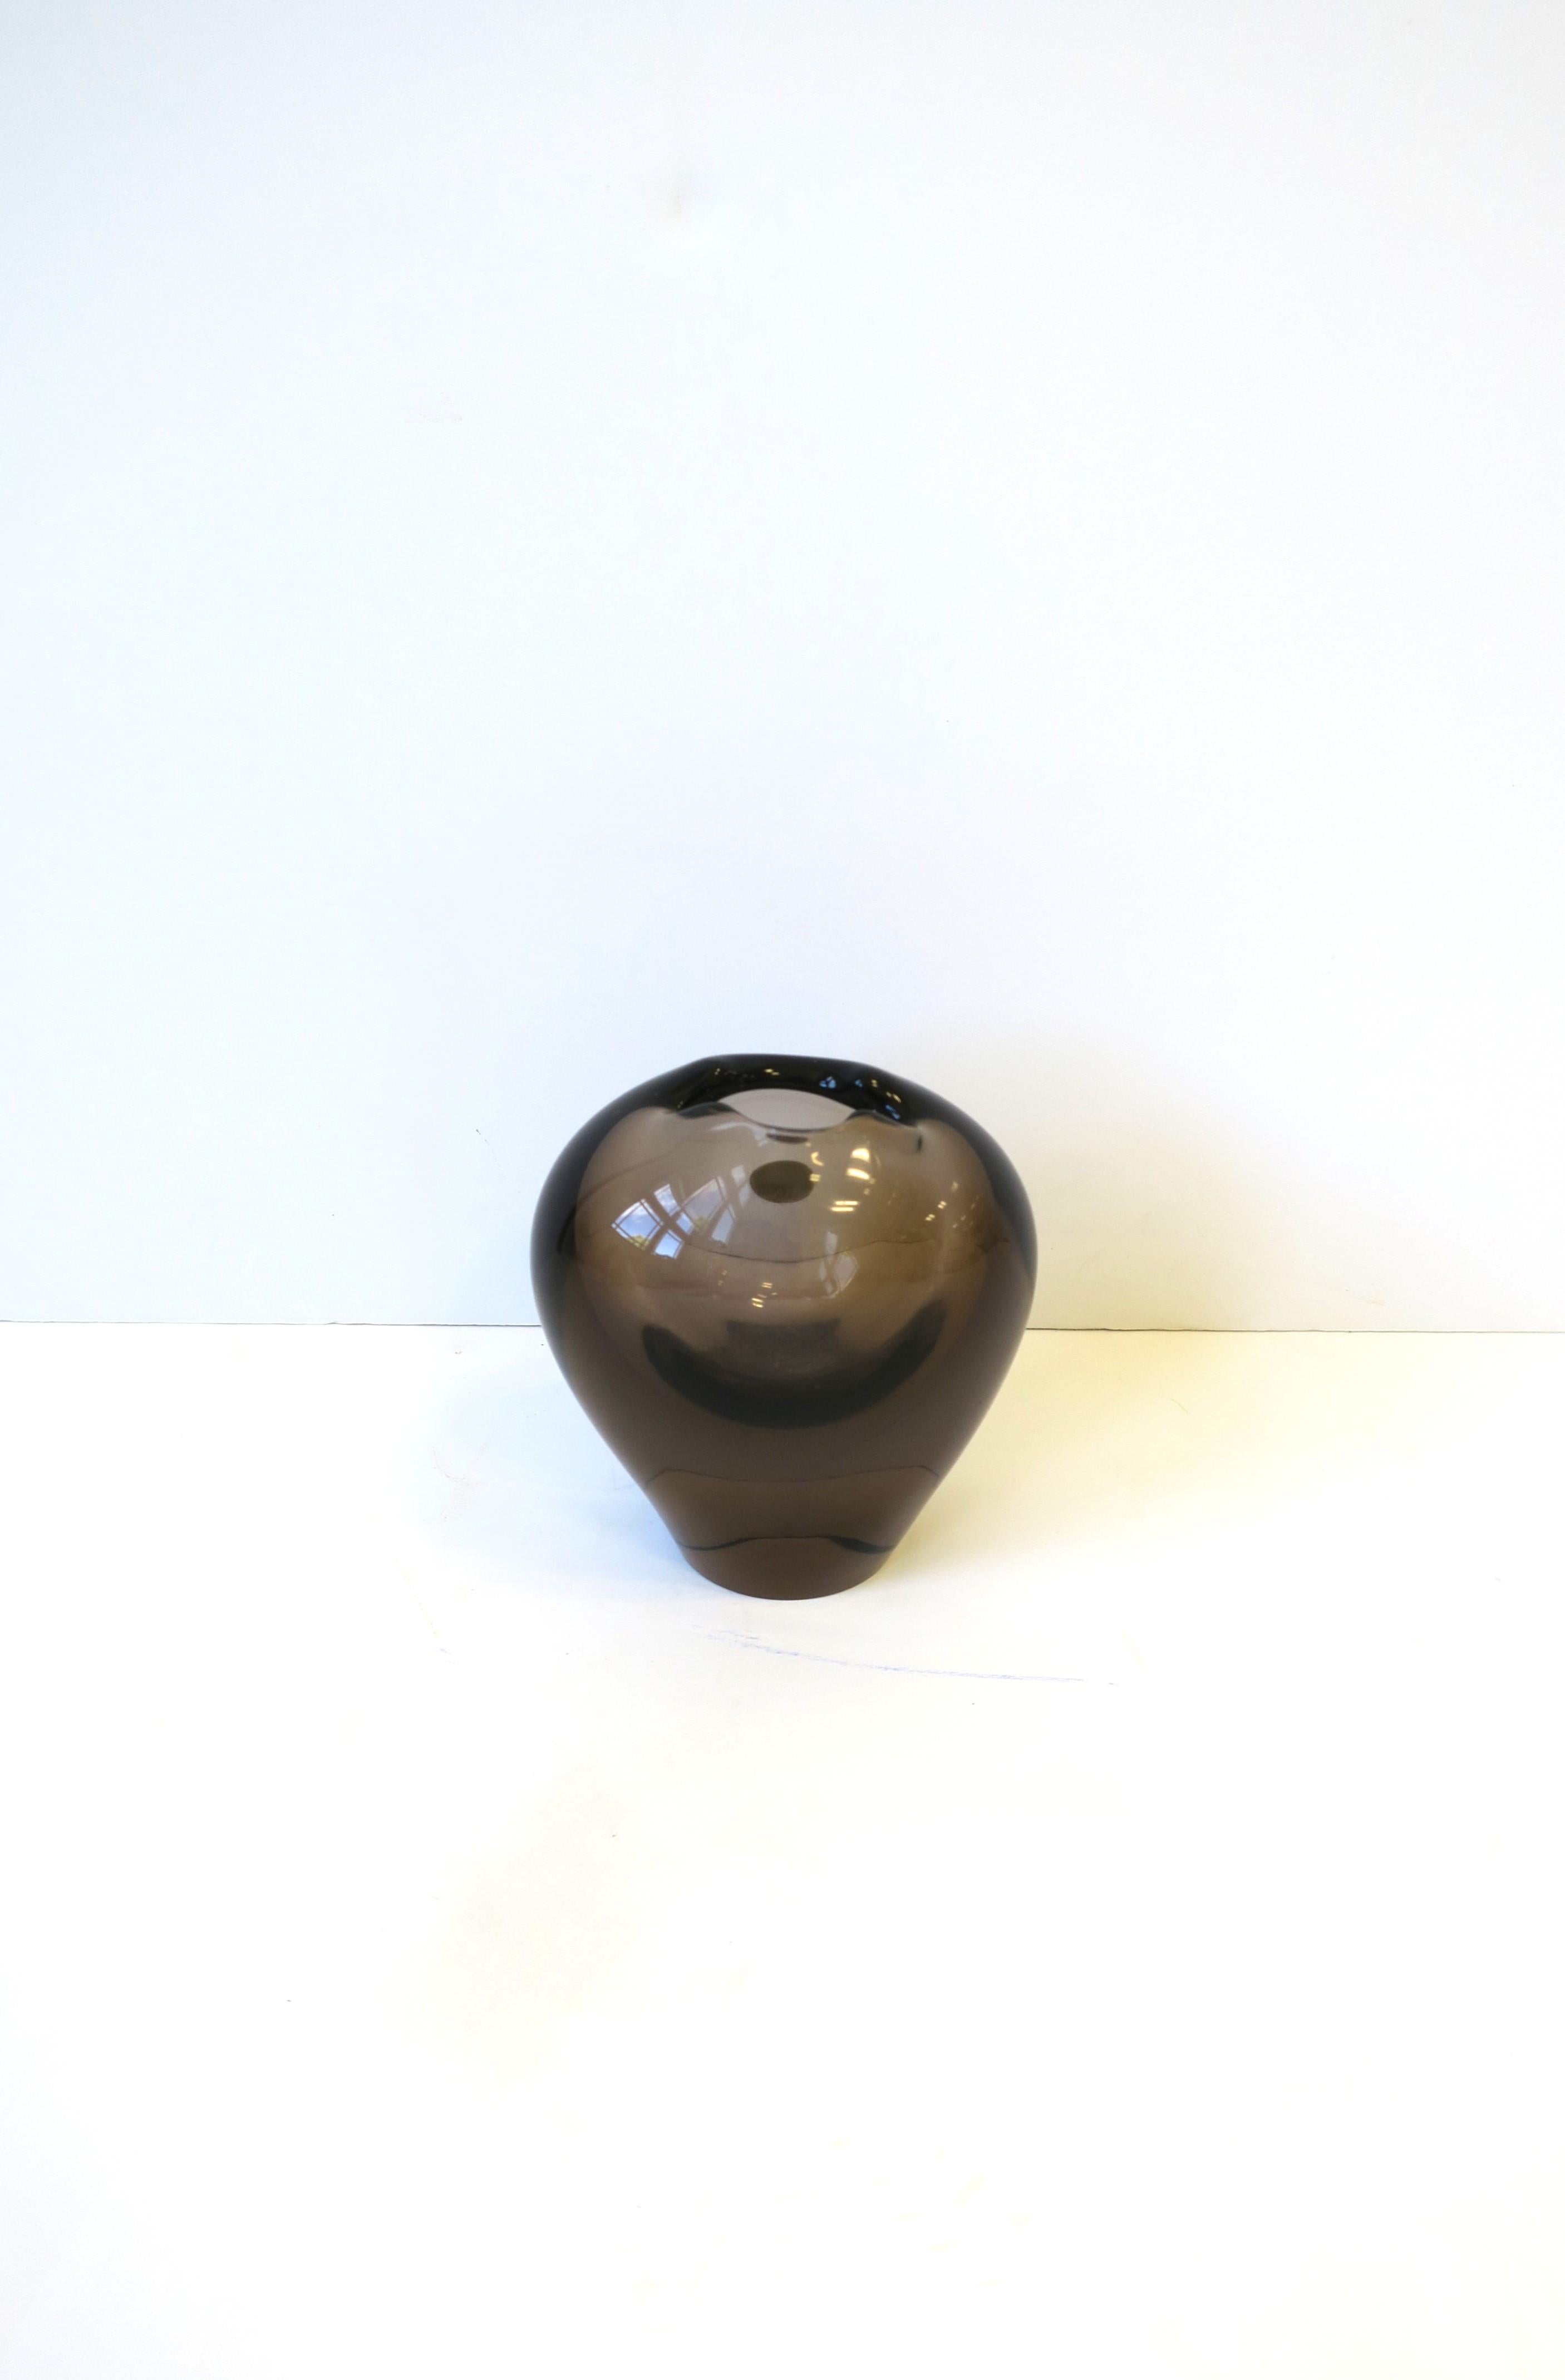 Kleine, handgefertigte Vase aus Kunstglas in organischer Bulbusform, Tschechoslowakei, um die Mitte des 20. Jahrhunderts. Die Vase hat einen abgestuften rauchigen Pflaumenton. Schön als Einzelstück oder mit ein paar kleinen Blumen. Das Stück wurde